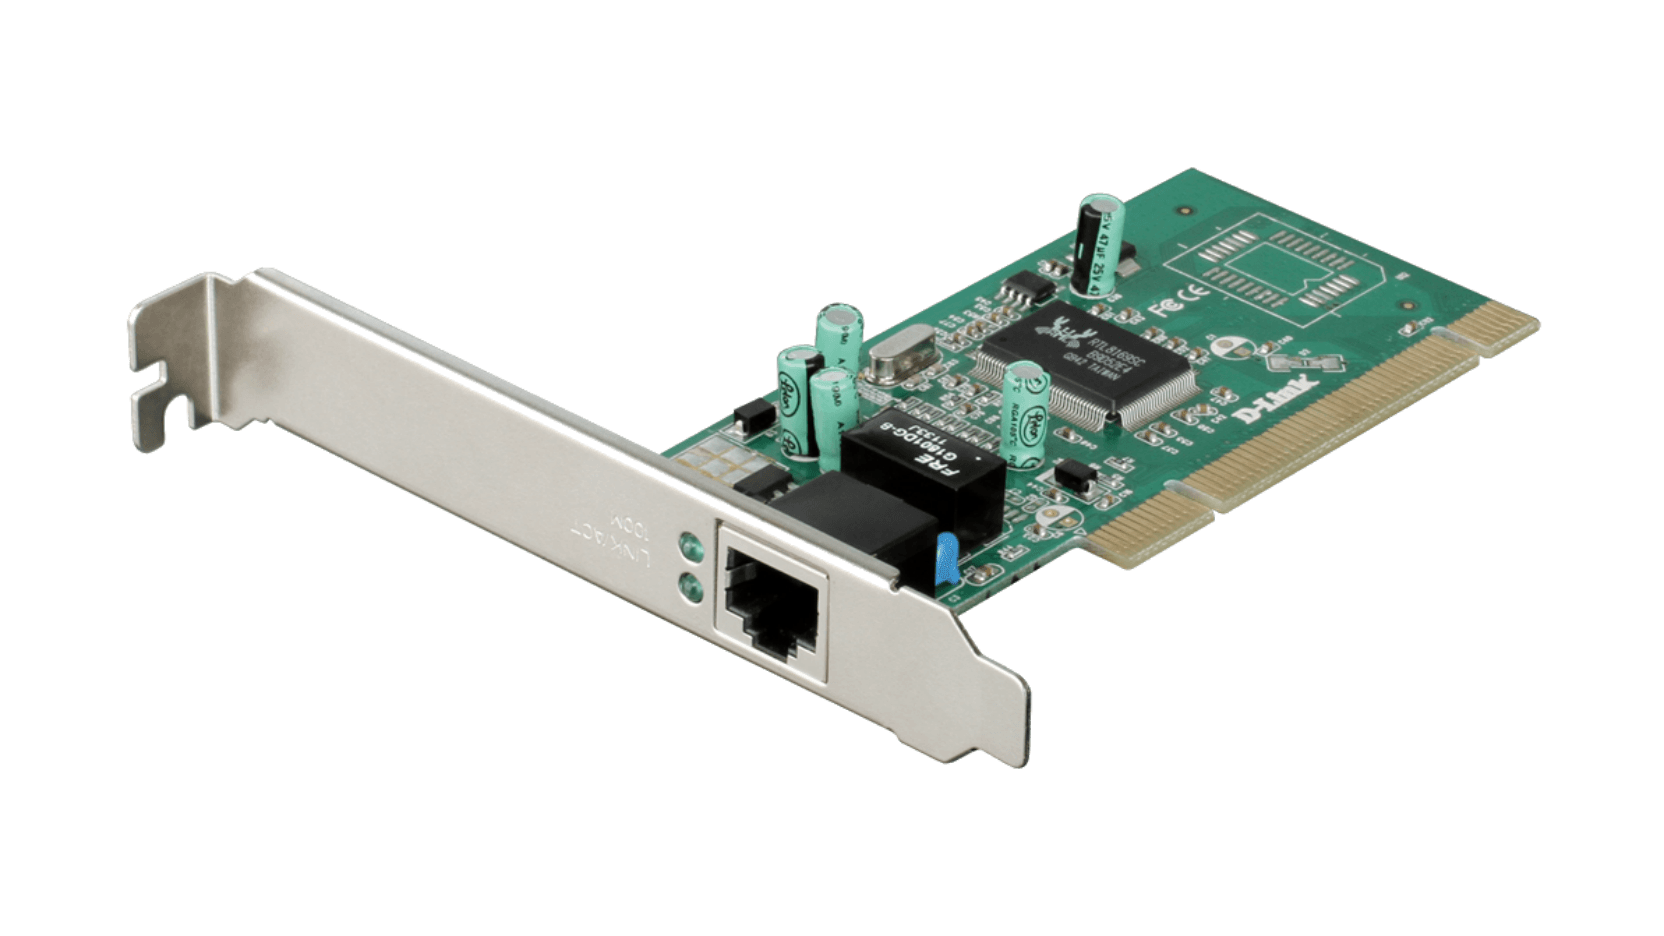 DGE‑528T Copper Gigabit PCI Card for PC